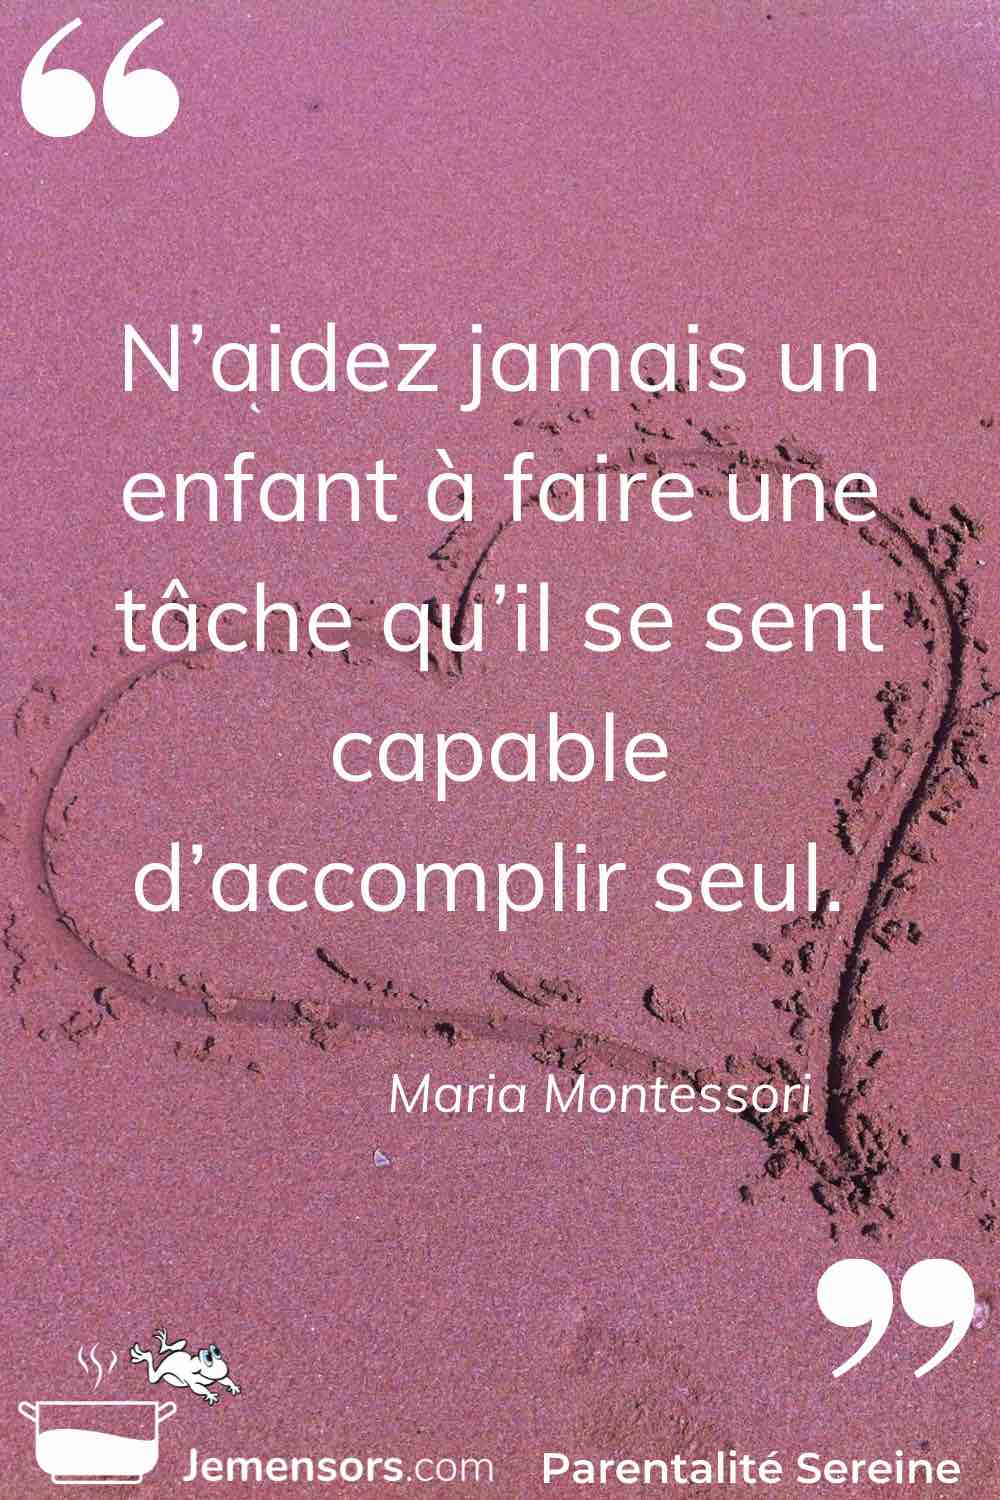 "N’aidez jamais un enfant à faire une tâche qu’il se sent capable d’accomplir seul." Maria Montessori